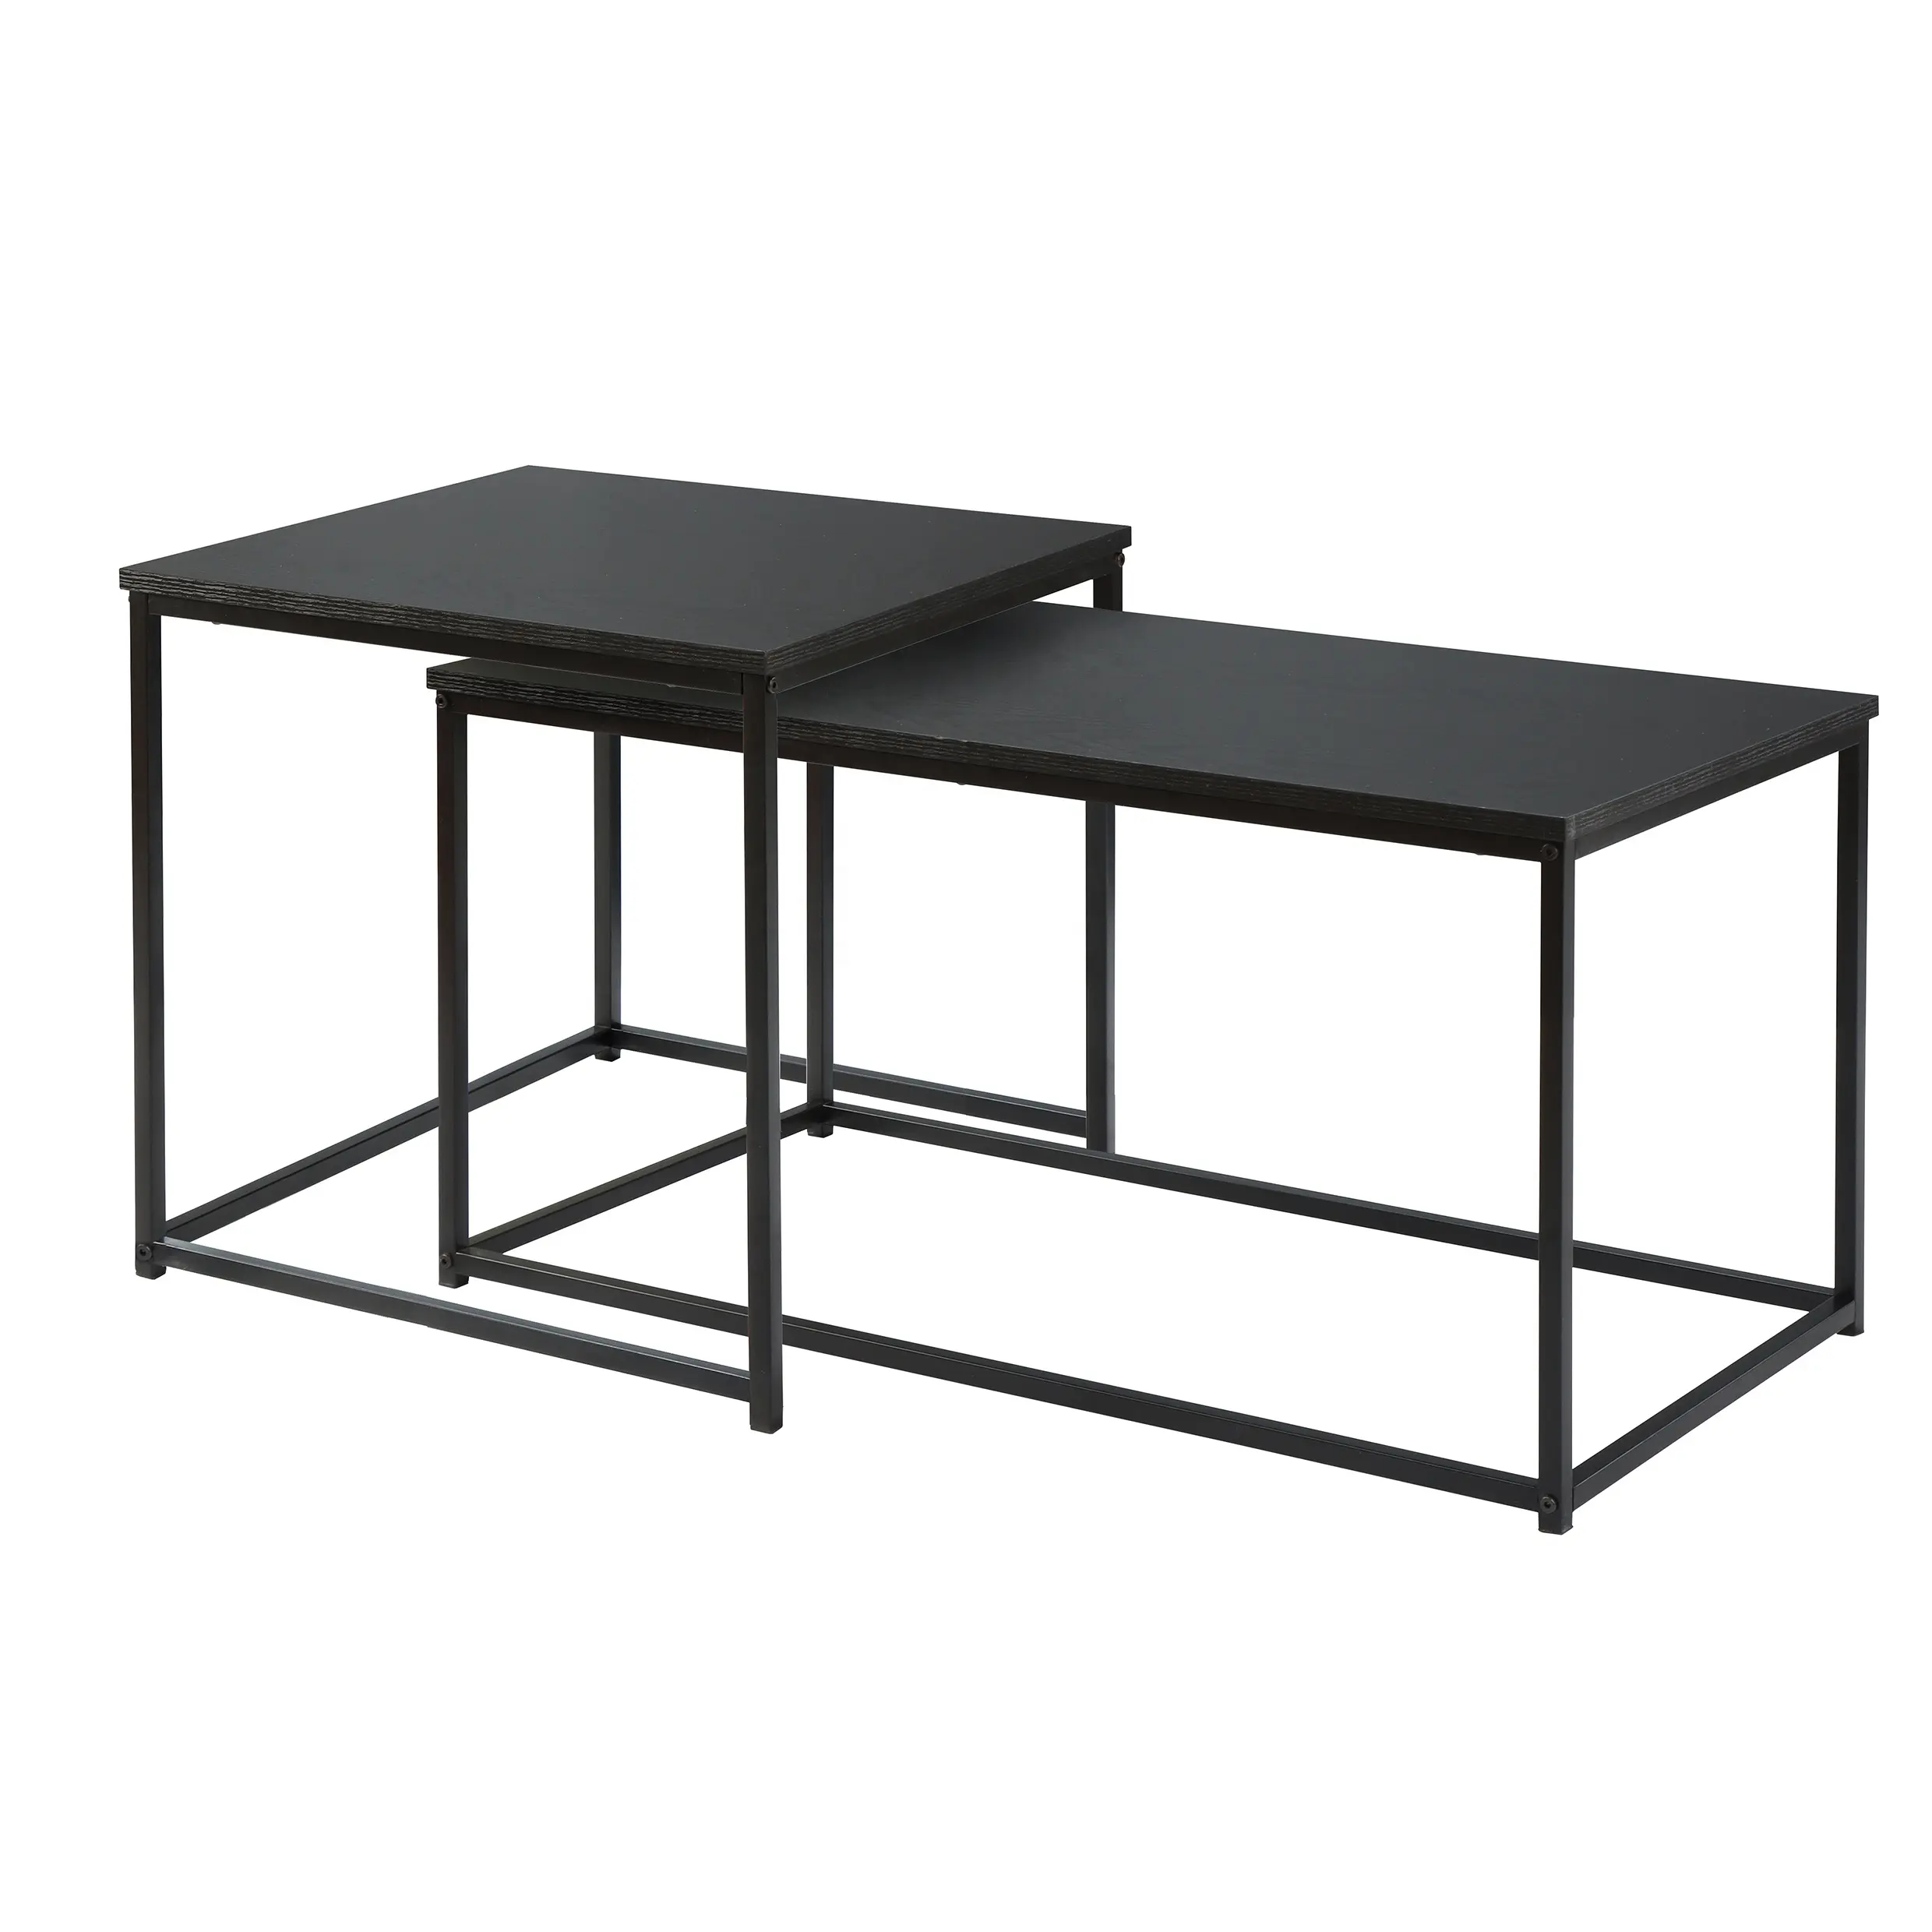 Table basse noire industrielle avec bois massif et métal artisanat meubles tables d'extérieur pour usage domestique ensemble deux tables basses